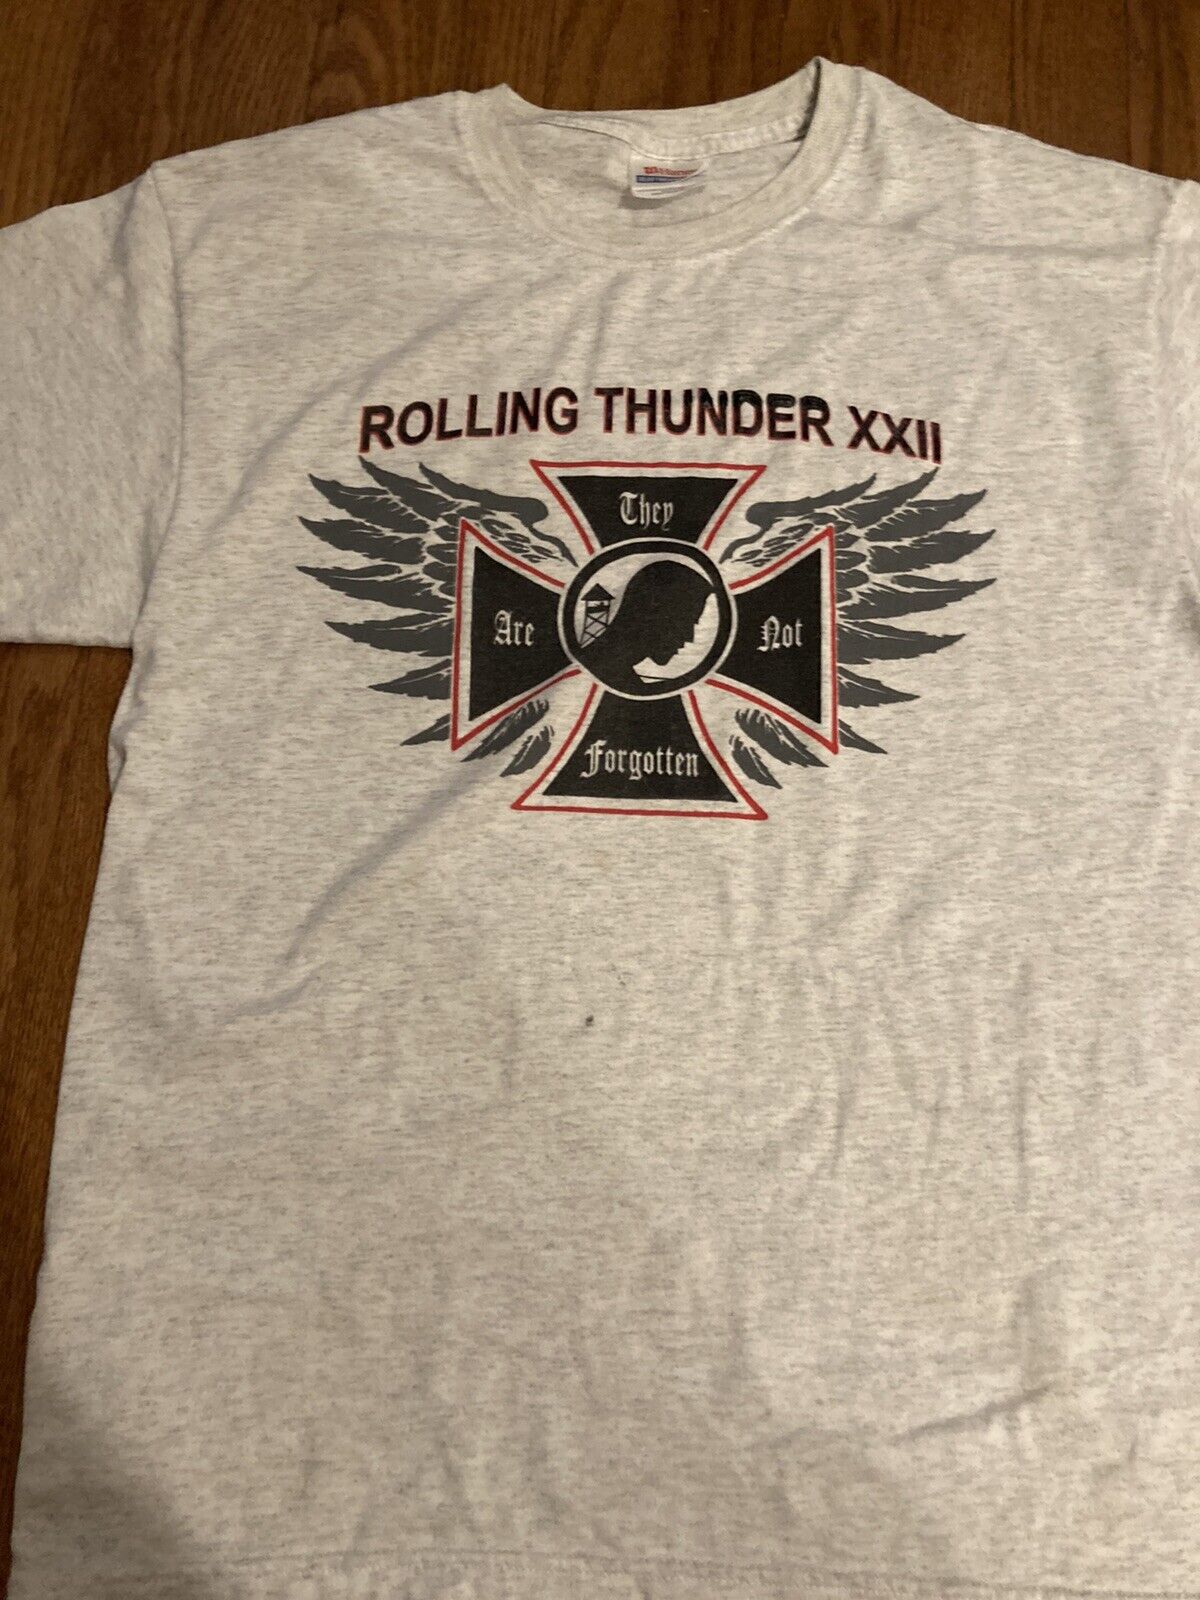 Vintage 2010 Rolling Thunder Xxii Washington D.c. Ride For Freedom Shirt Size M